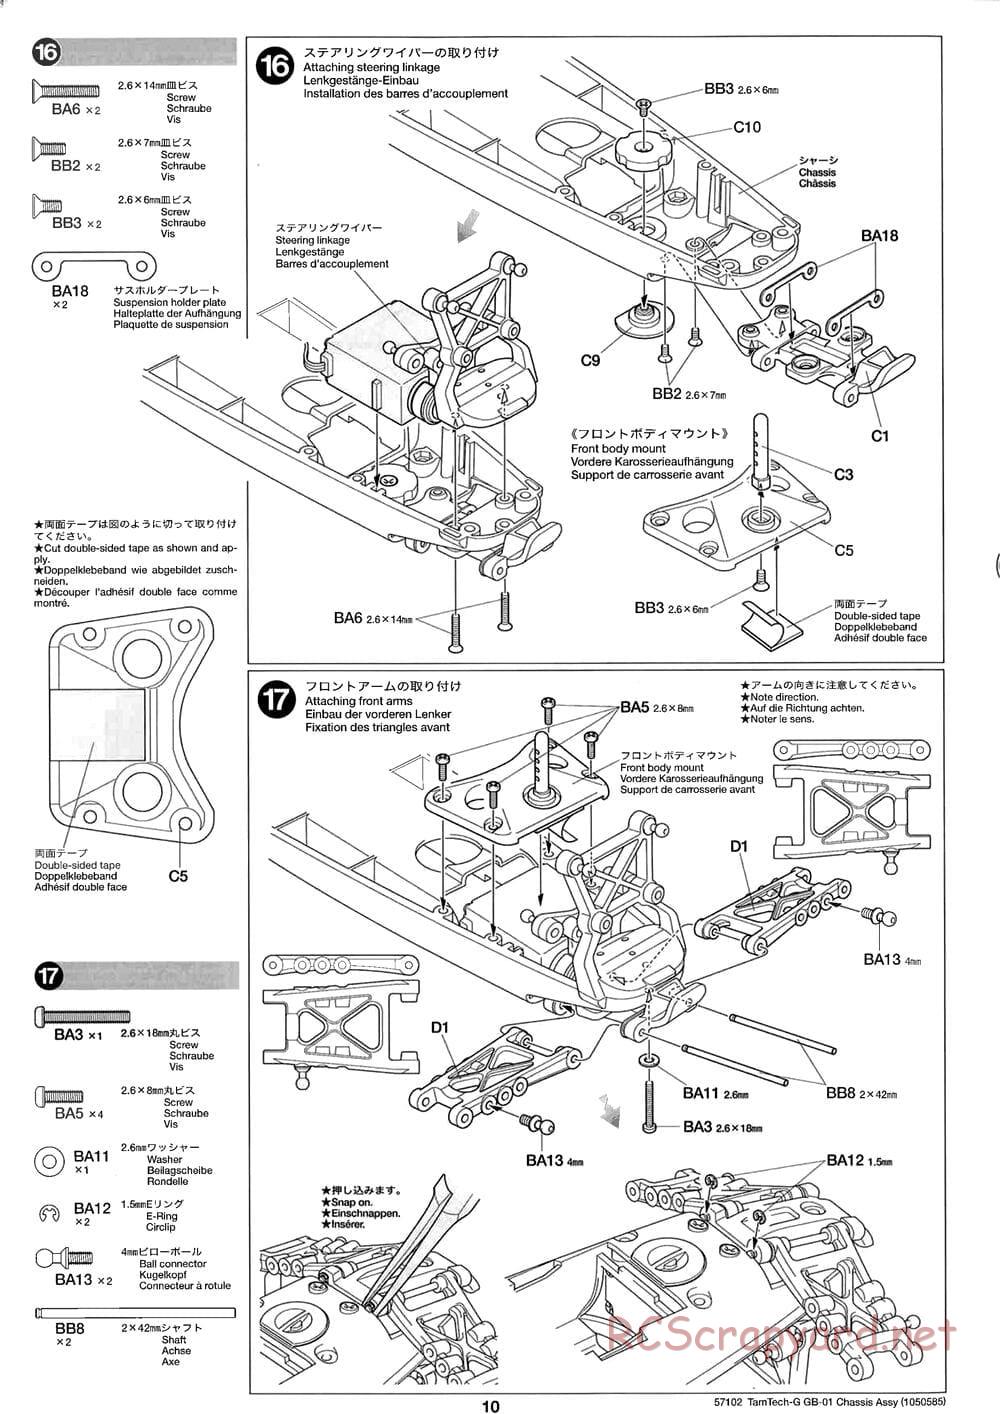 Tamiya - GB-01 Chassis - Manual - Page 10